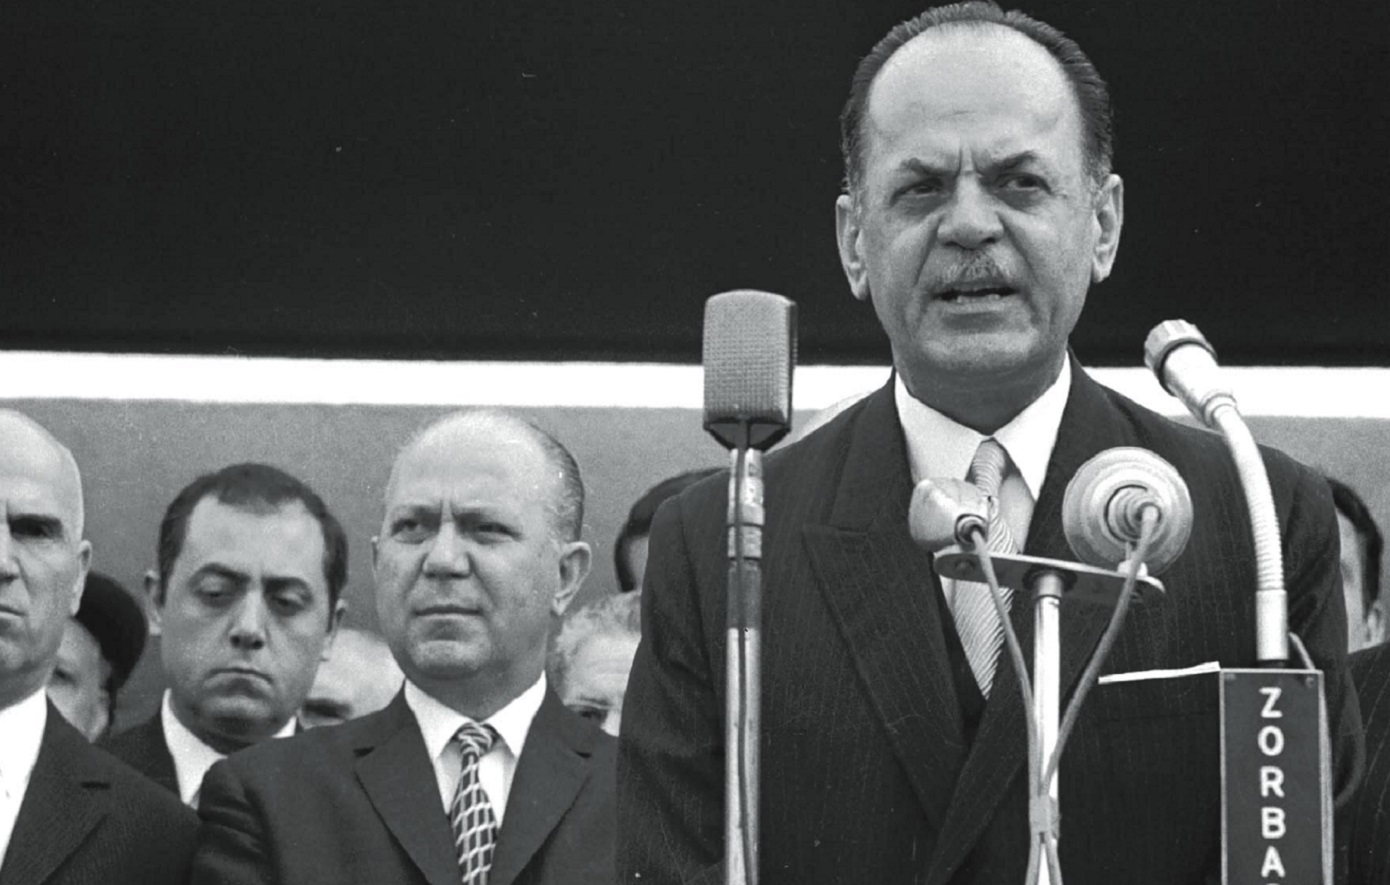 Τίποτα δεν γνώριζαν οι ΗΠΑ για την εκδήλωση του πραξικοπήματος στην Ελλάδα την 21η Απριλίου 1967